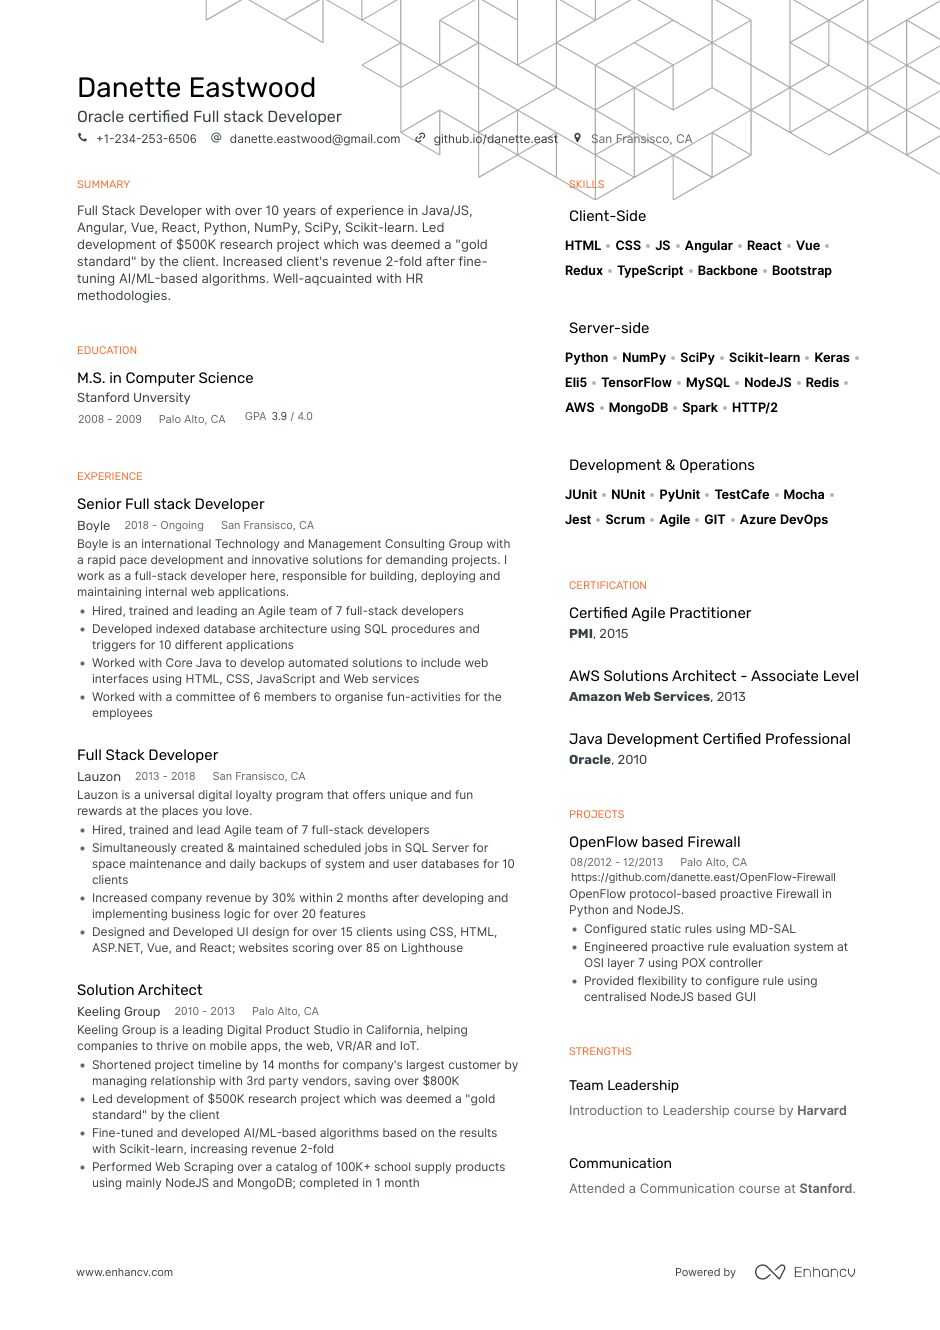 Full Stack Web Developer Resume Template Full Stack Developer Resume Examples & Writing Guide for 2021